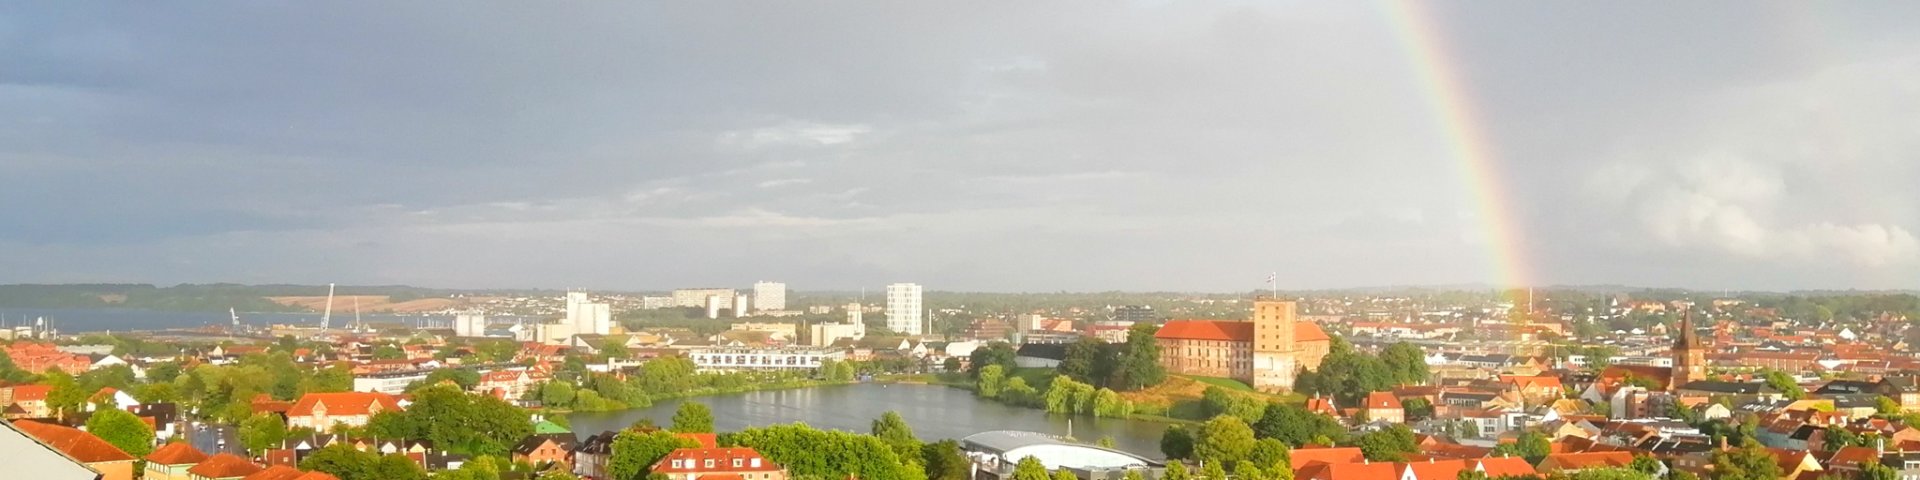 Udsigt over Kolding by fra Kikkenborgvej med Koldinghus og Slotssøen midt i billedet og med en dobbelt regnbue på himlen